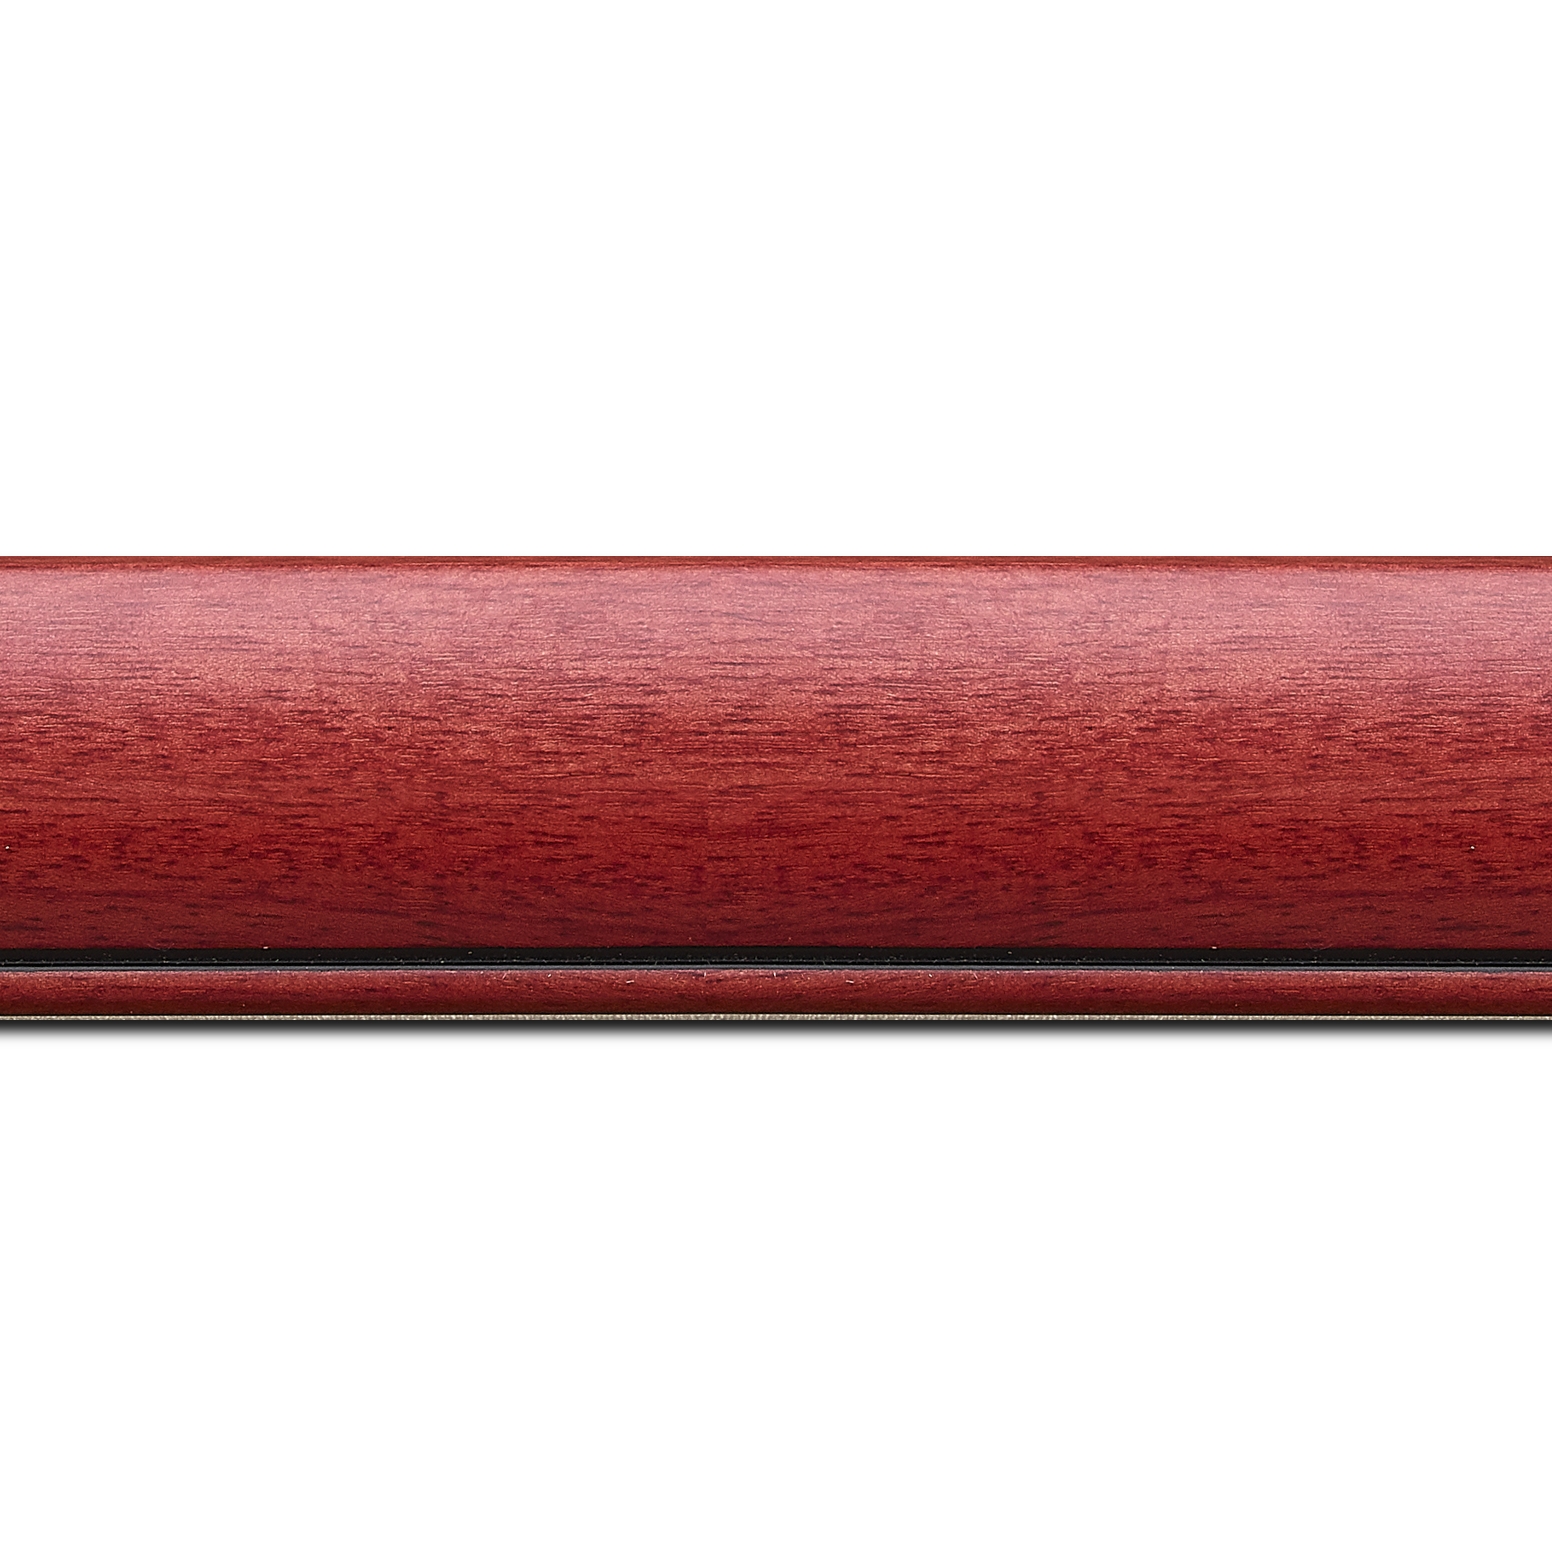 Baguette longueur 1.40m bois profil arrondi largeur 4.7cm couleur rouge cerise satiné rehaussé d'un filet noir